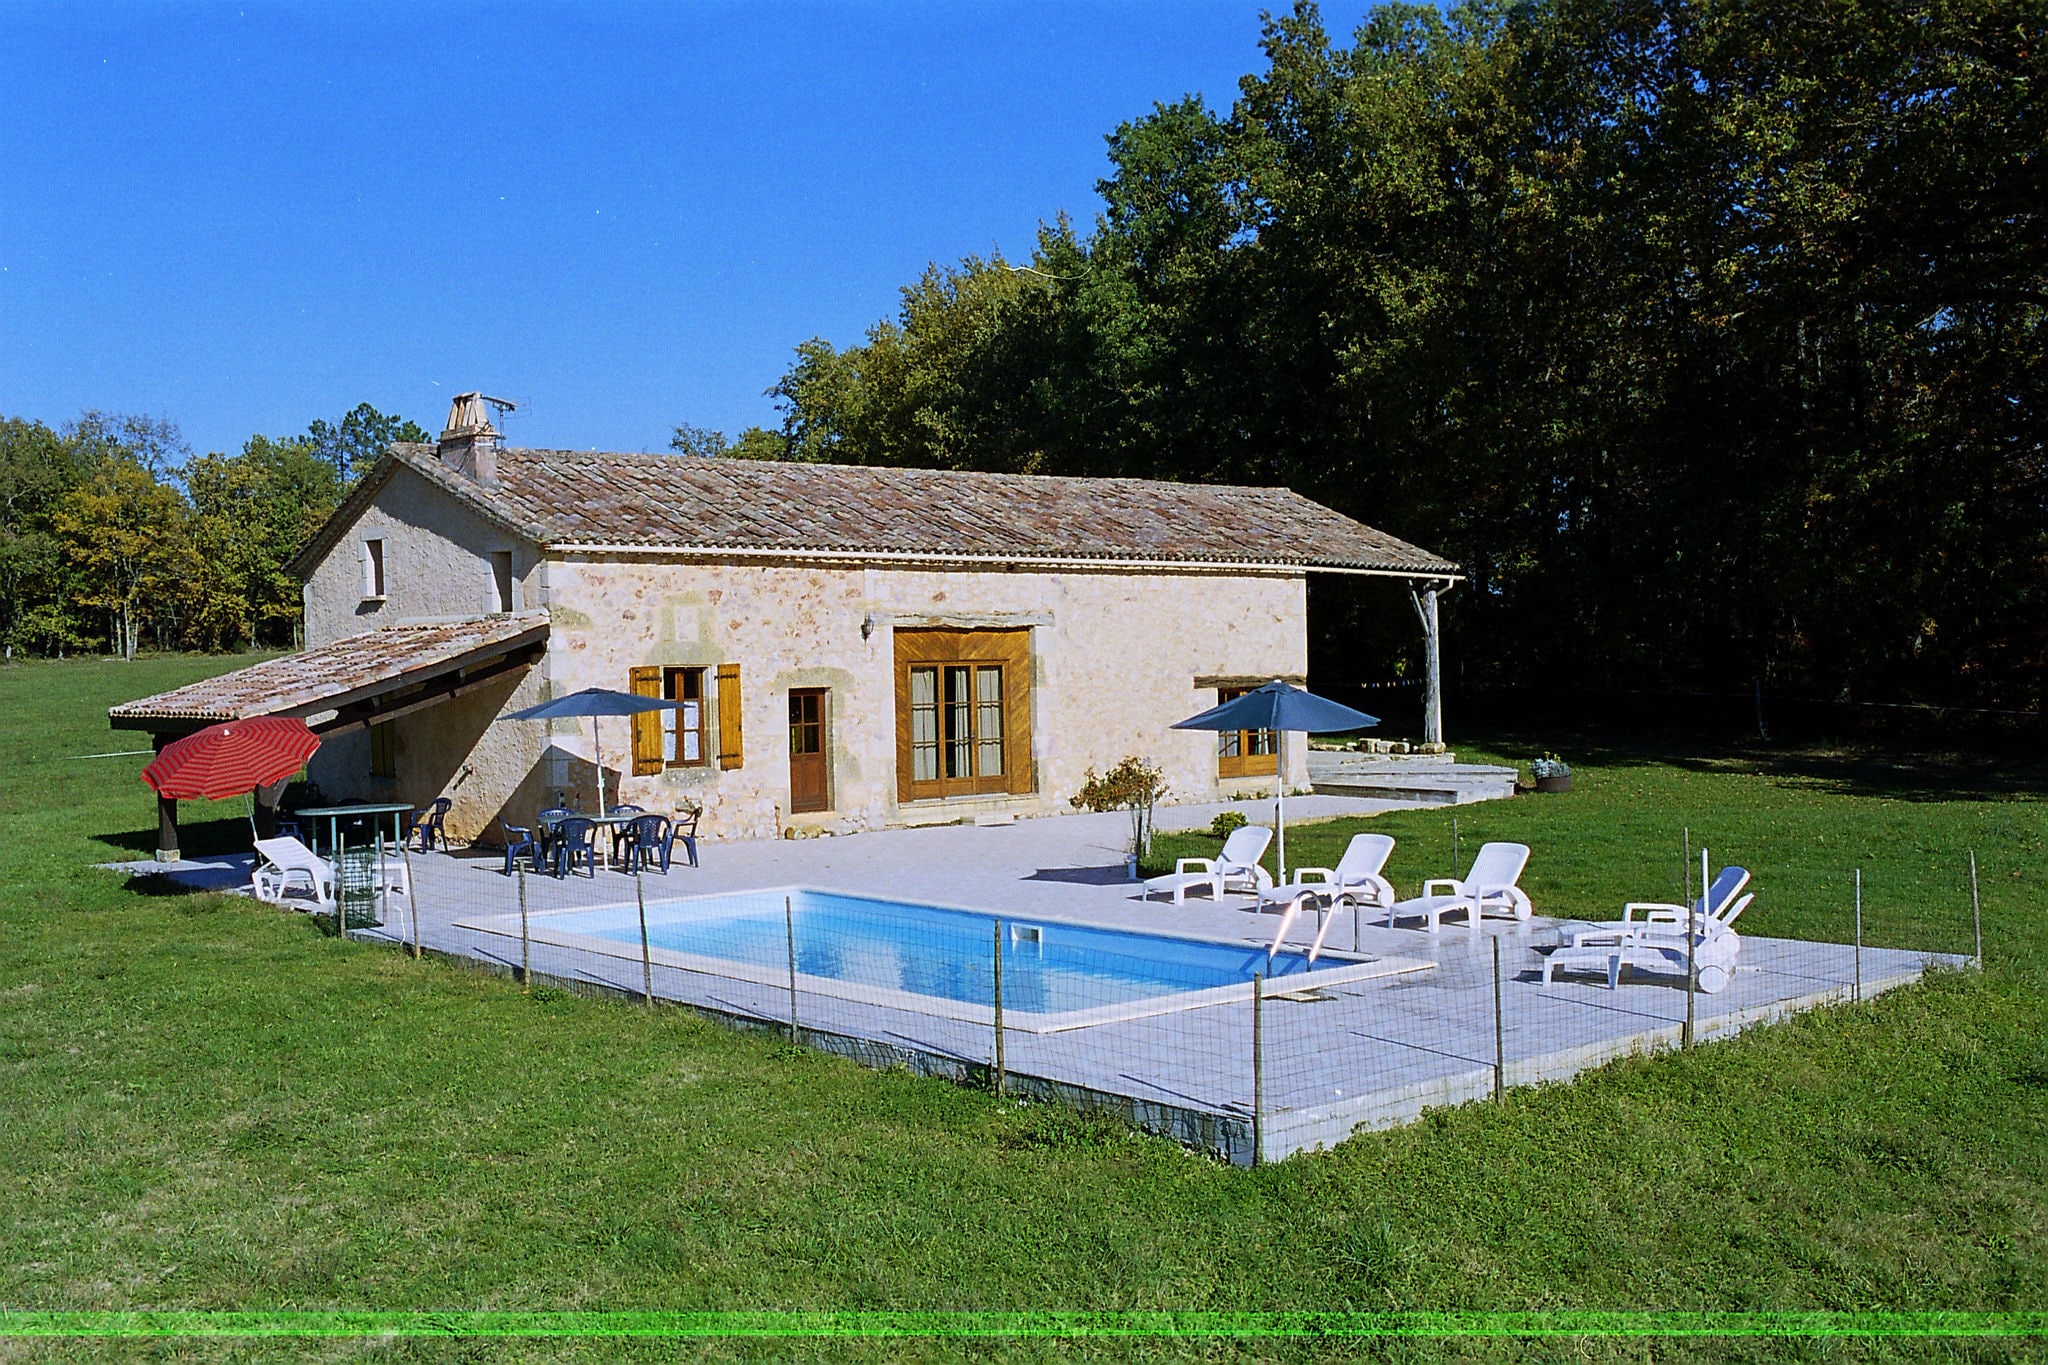 Typisch Périgord vakantiehuis met privézwembad midden in de ongerepte natuur.